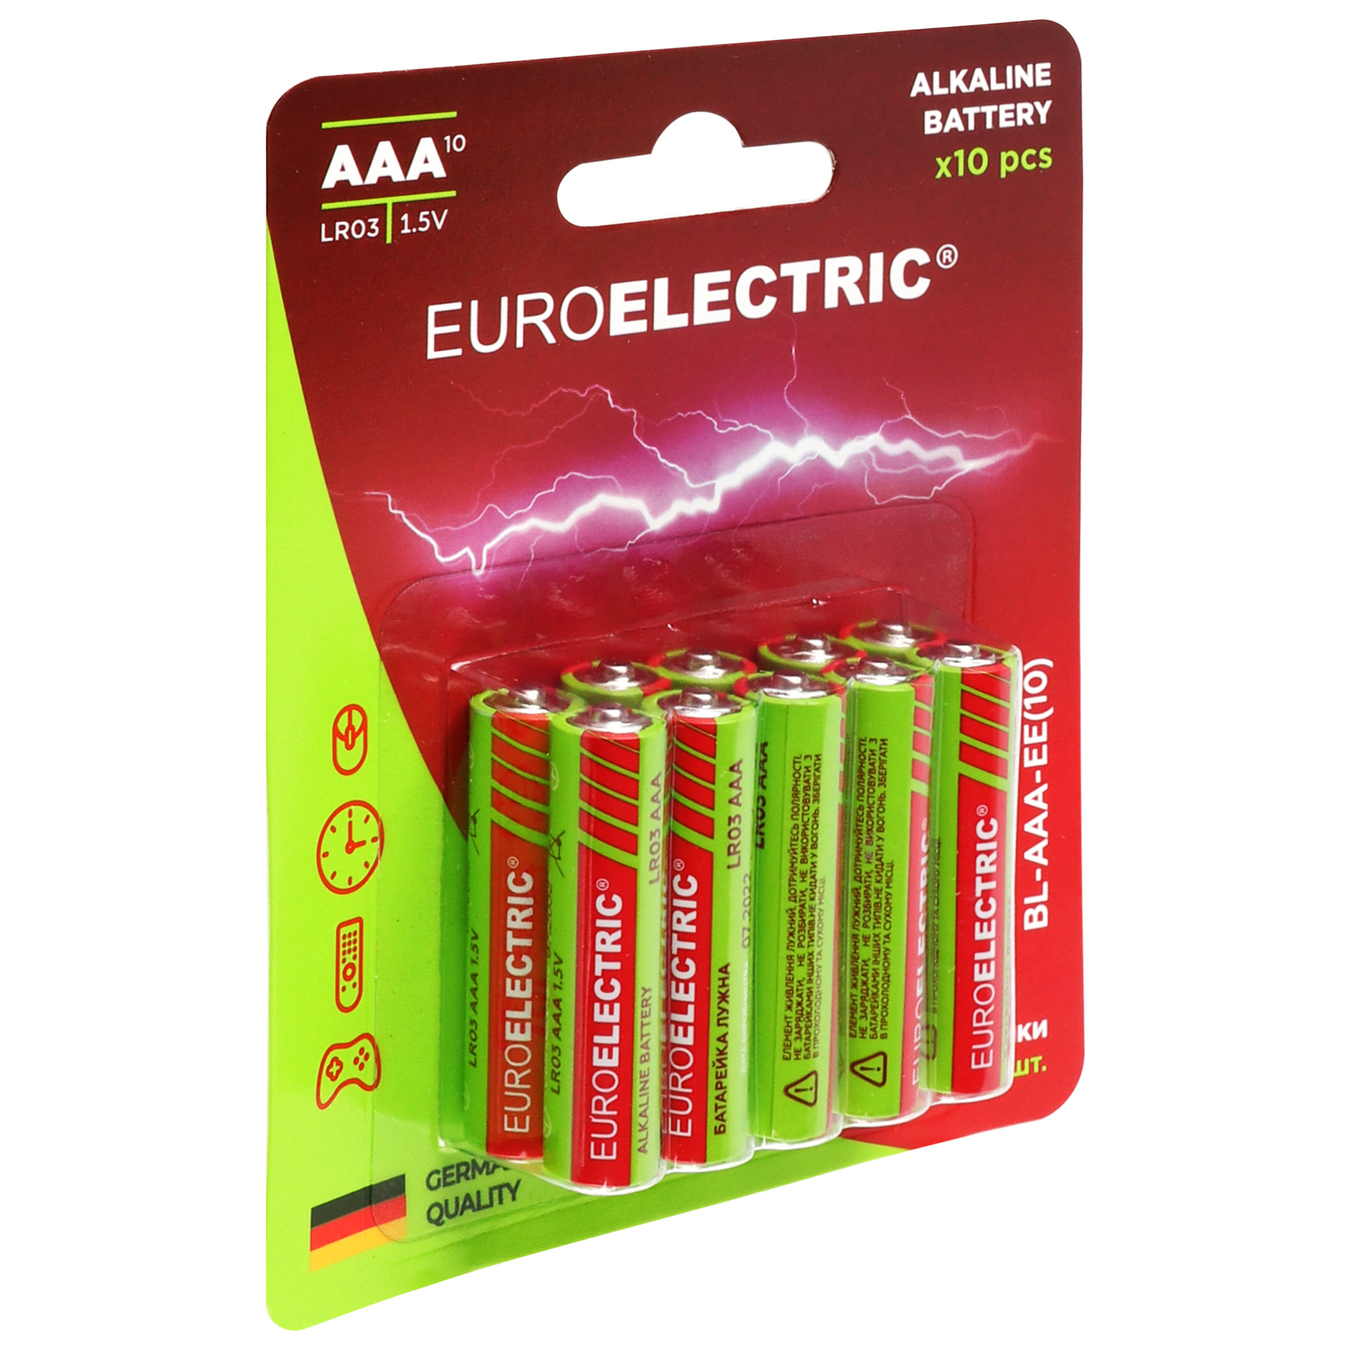 Battery Euroe AAA LR03 1.5V Euroelectric alkaline 10pcs 2